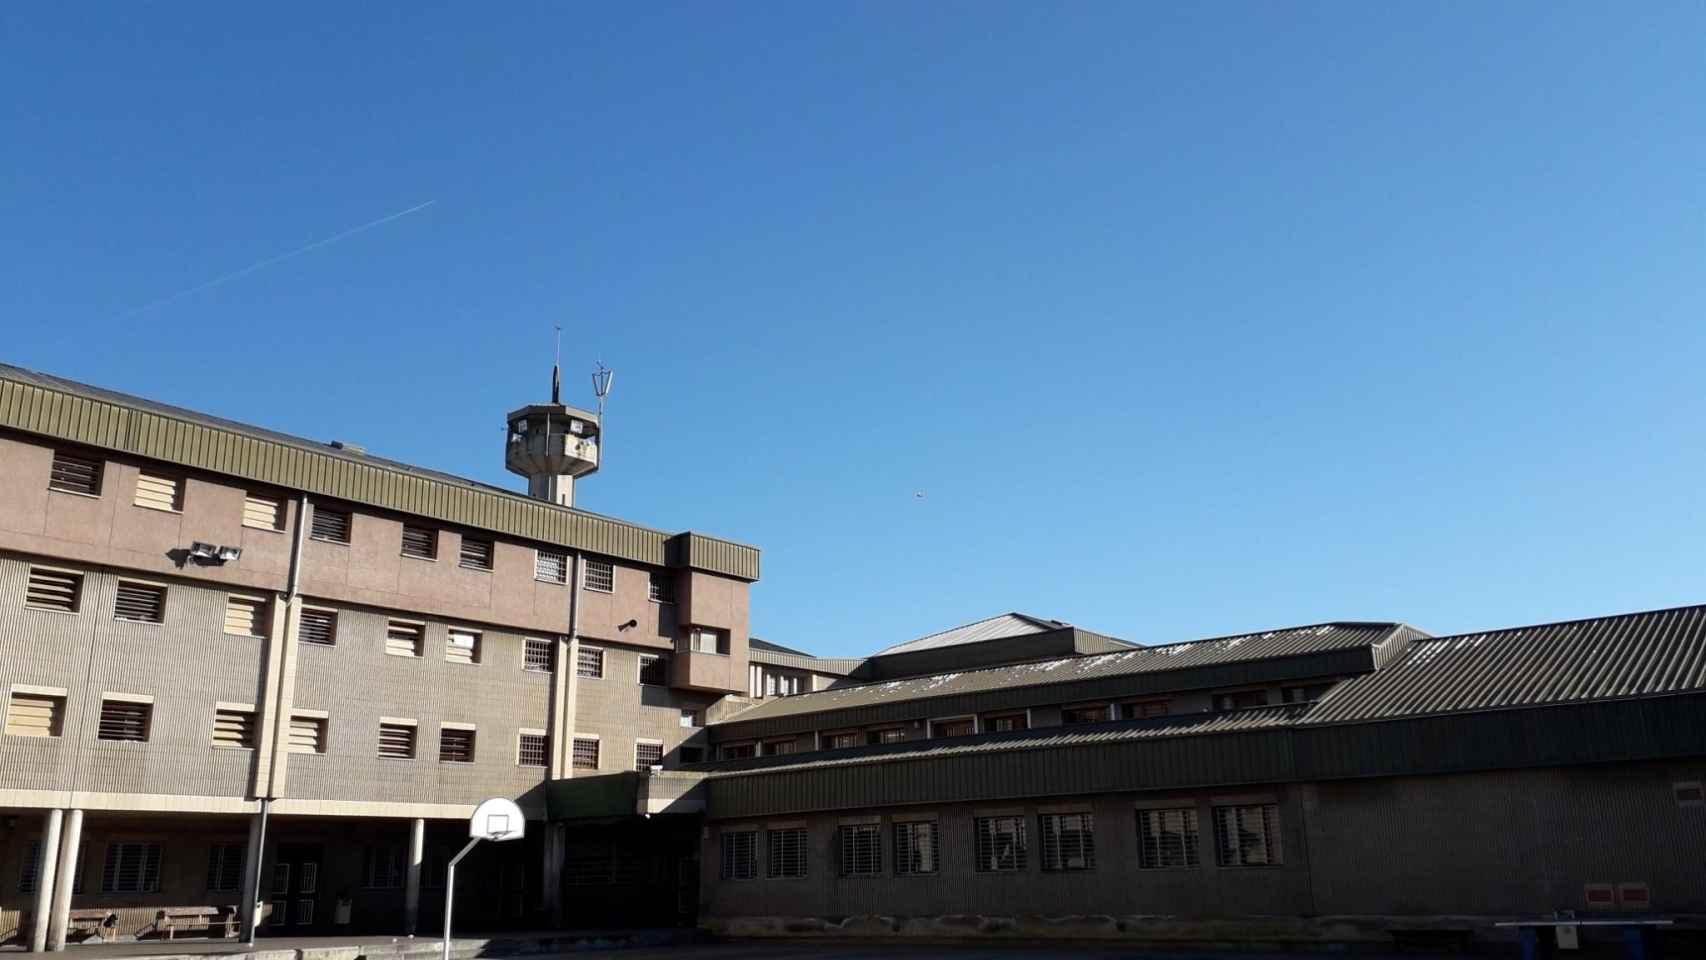 Centro Penitenciario de Quatre Camins en La Roca del Vallès, Barcelona / EP